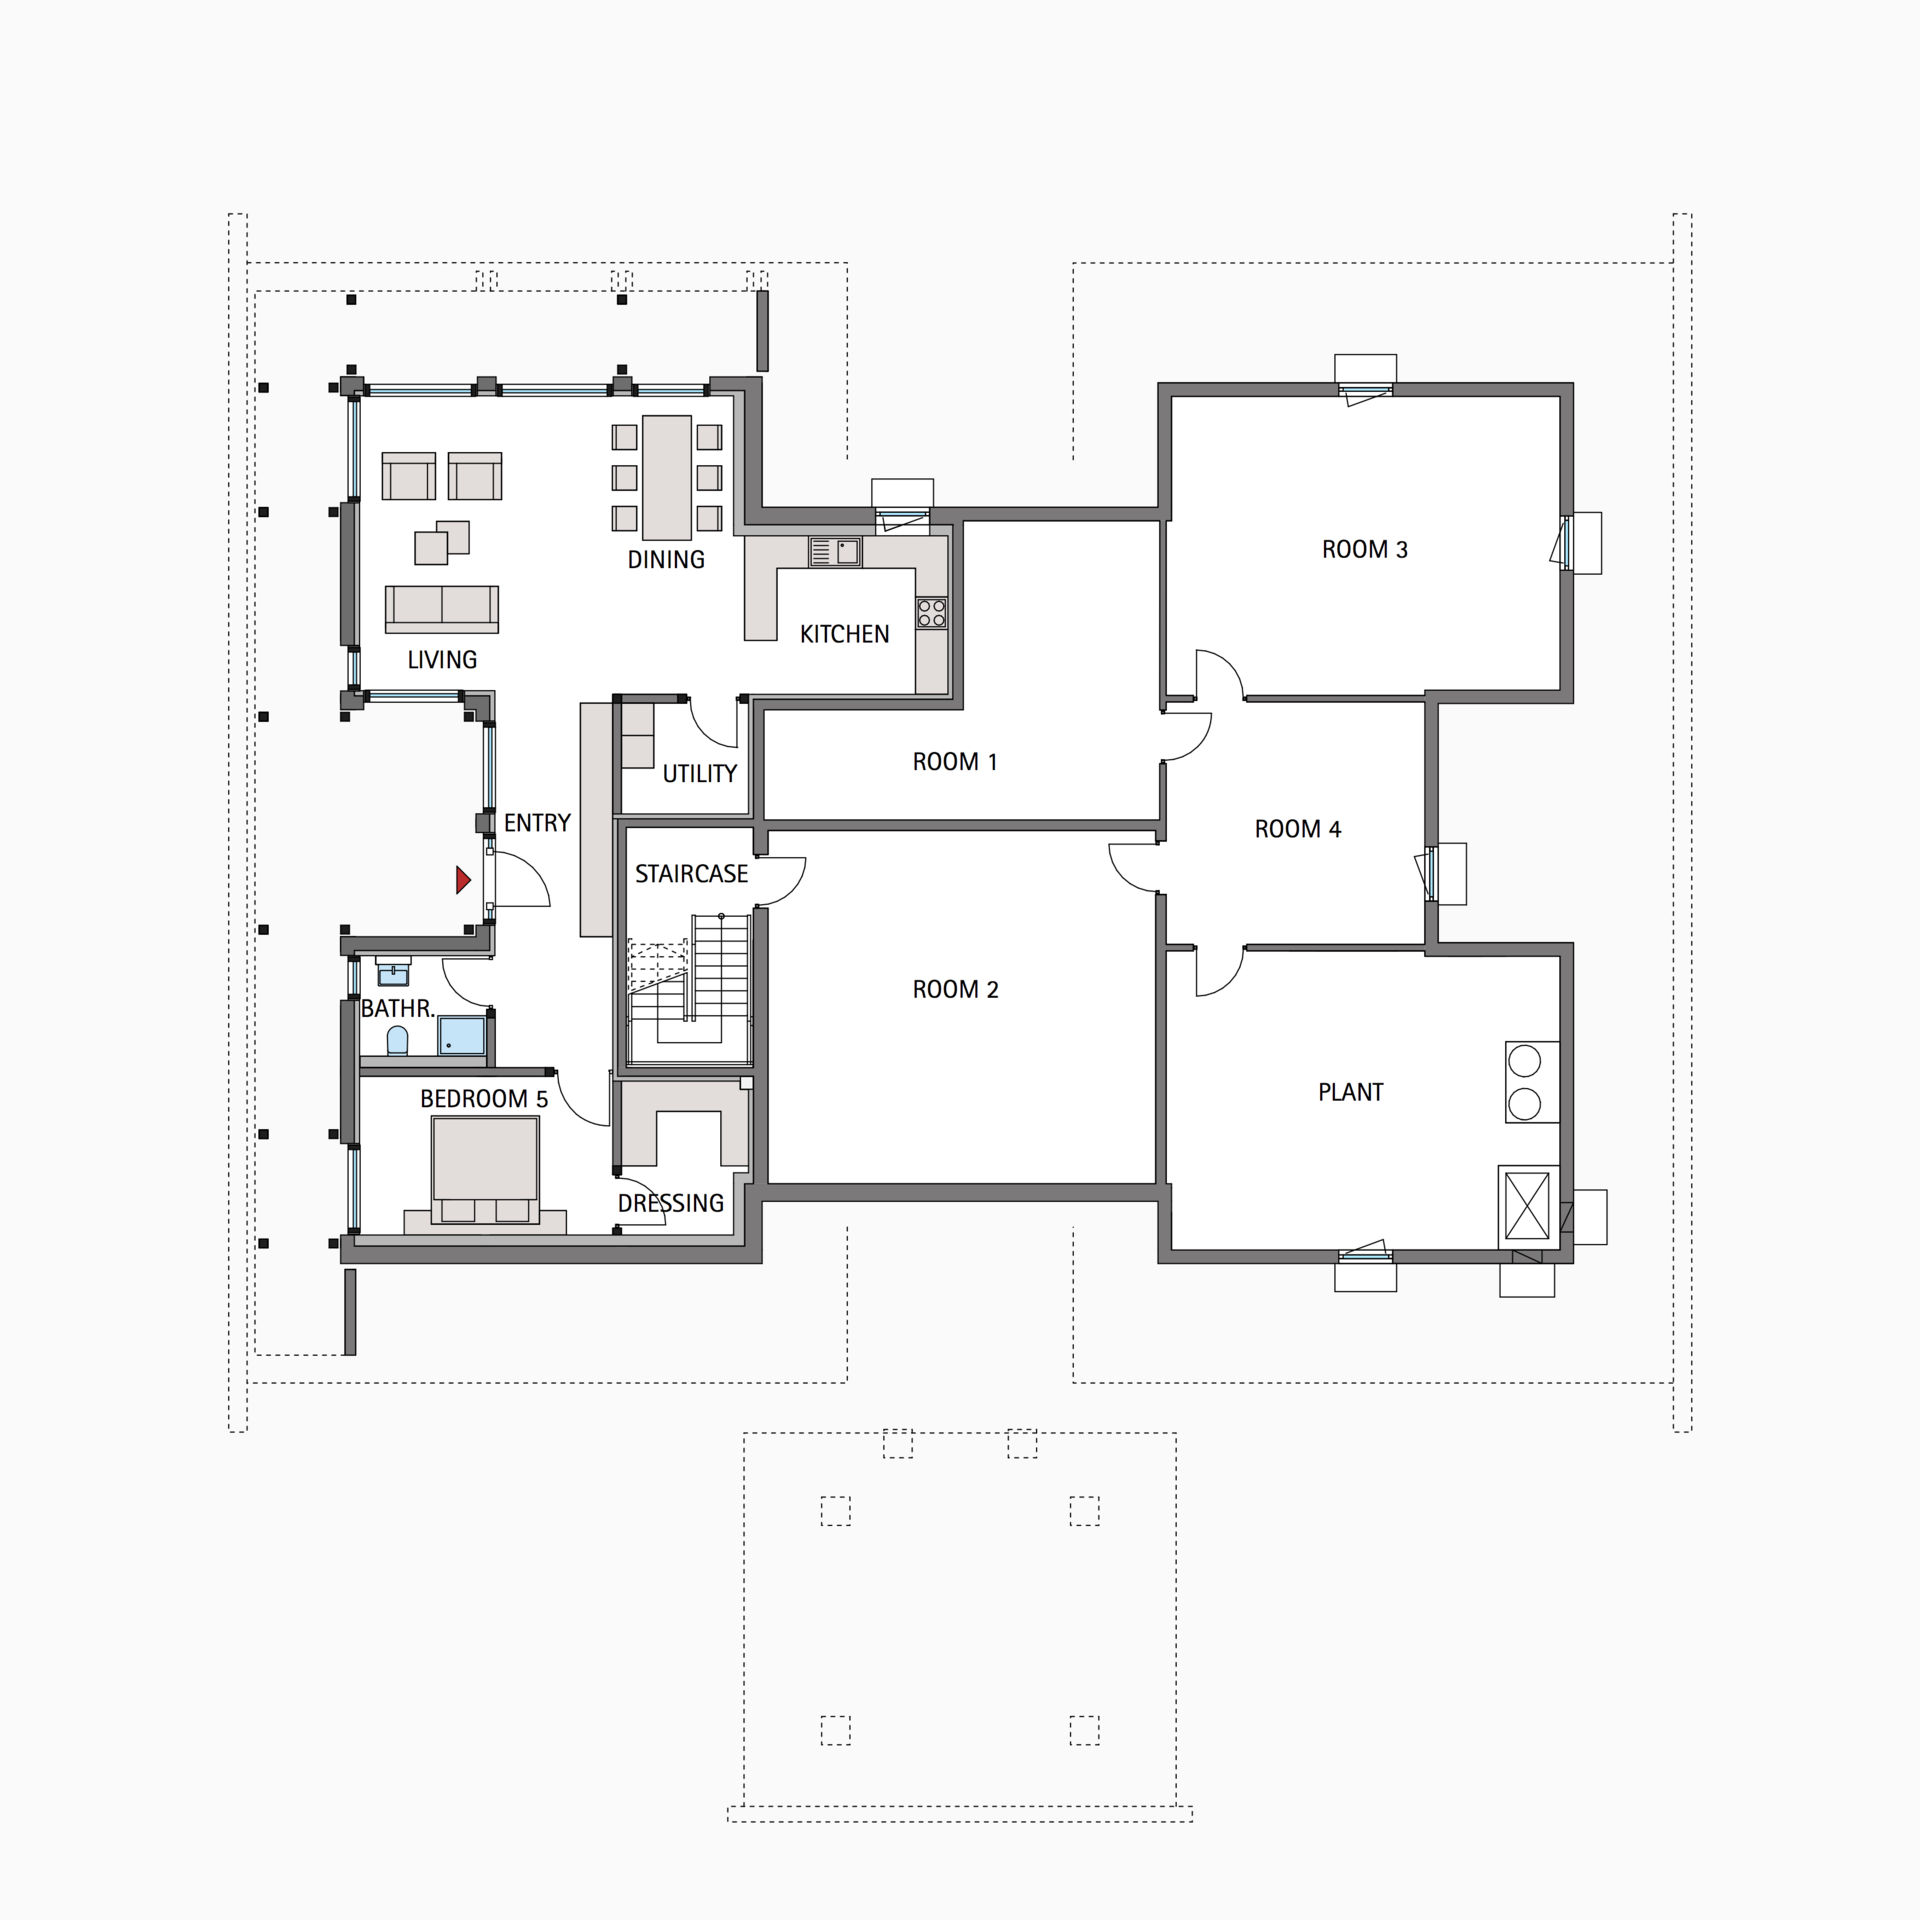 HUF house floor plan basement ART 9